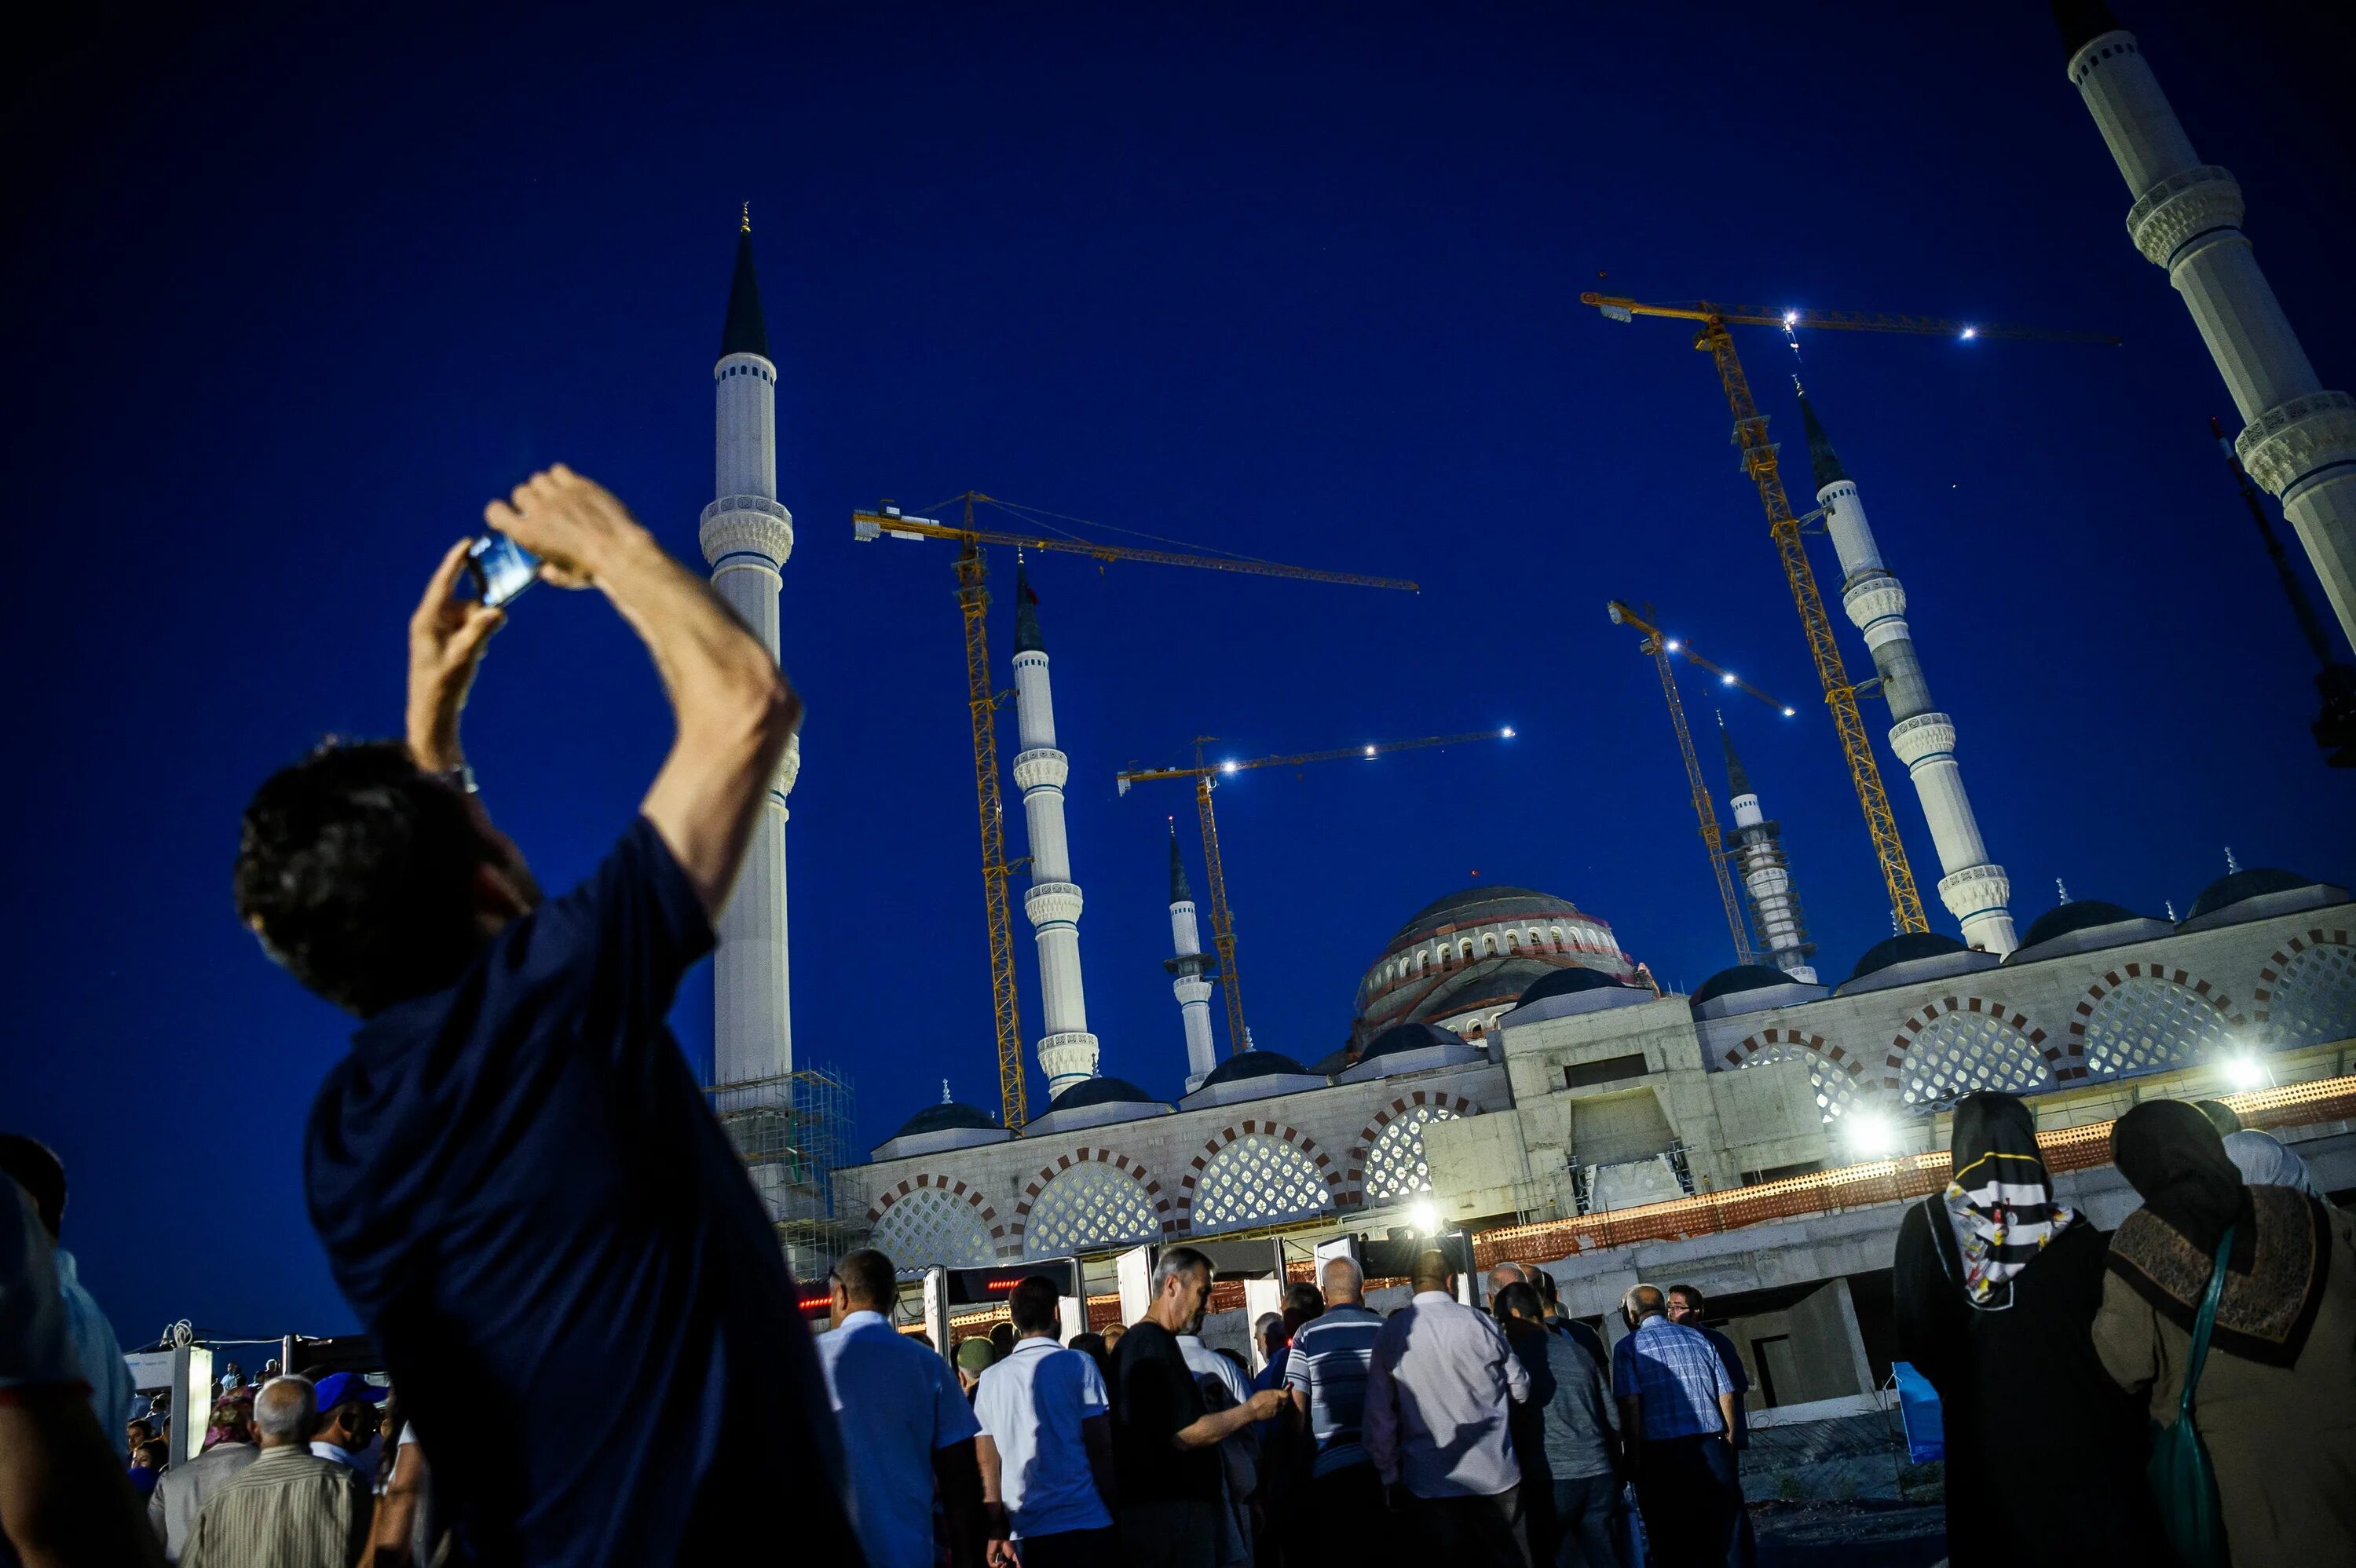 Самые крупные мечети. Мечеть Чамлыджа в Стамбуле. Самая большая мечеть в Стамбуле Чамлыджа. Самая большая мечеть в Турции Чамлыджа. Мечети Чамлыджа (Çamlica Camii).